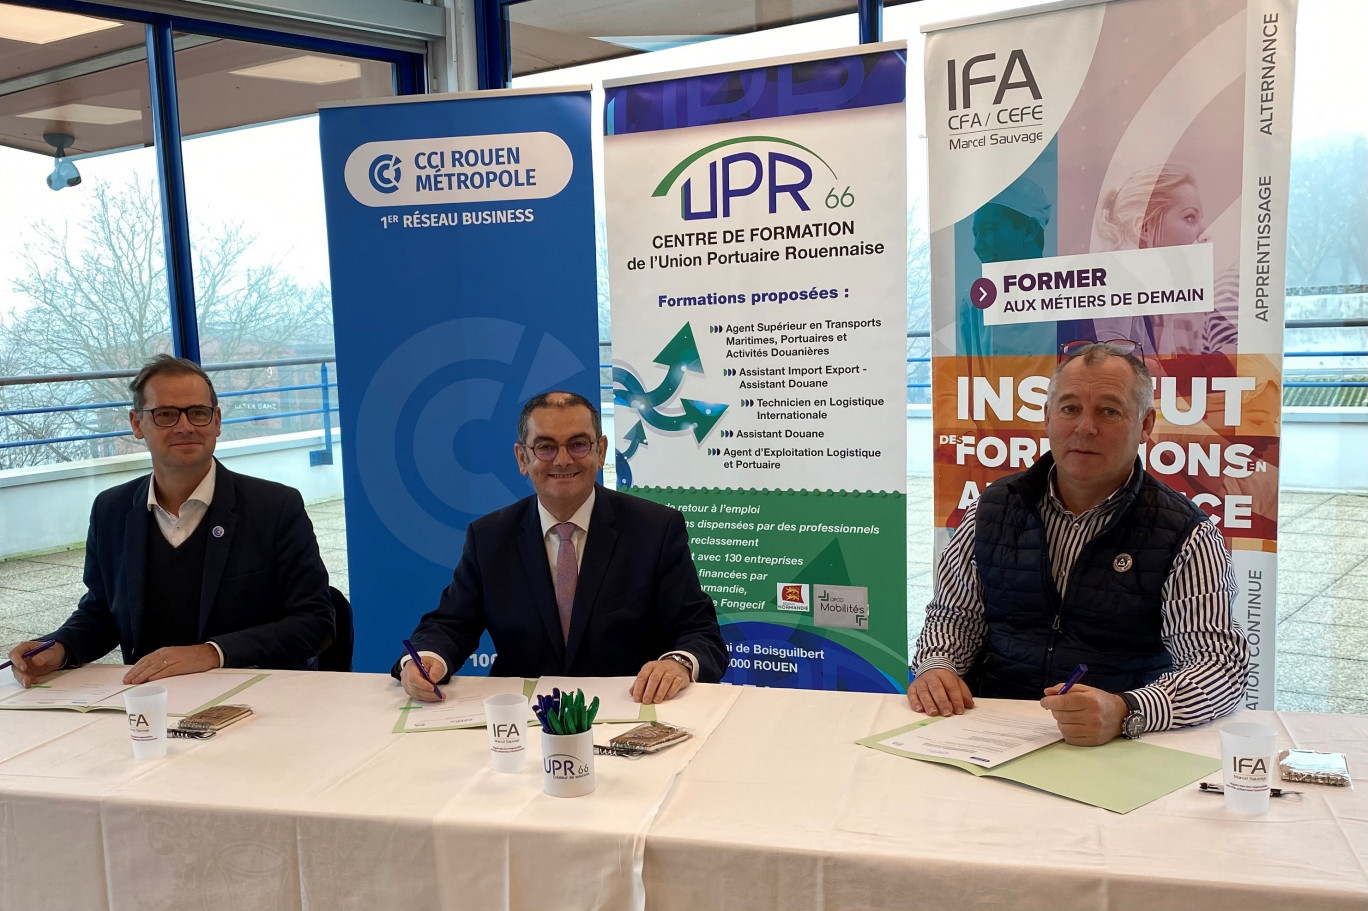 Une convention a été signée entre la CCI Rouen Métropole, représentée par Vincent Laudat (à gauche) ; le CPFP-UPR, représenté par Gilles Kindelberger (au centre) et l'IFA Marcel Sauvage, représenté par Stéphane Lecomte (à droite). (Photo CCI)